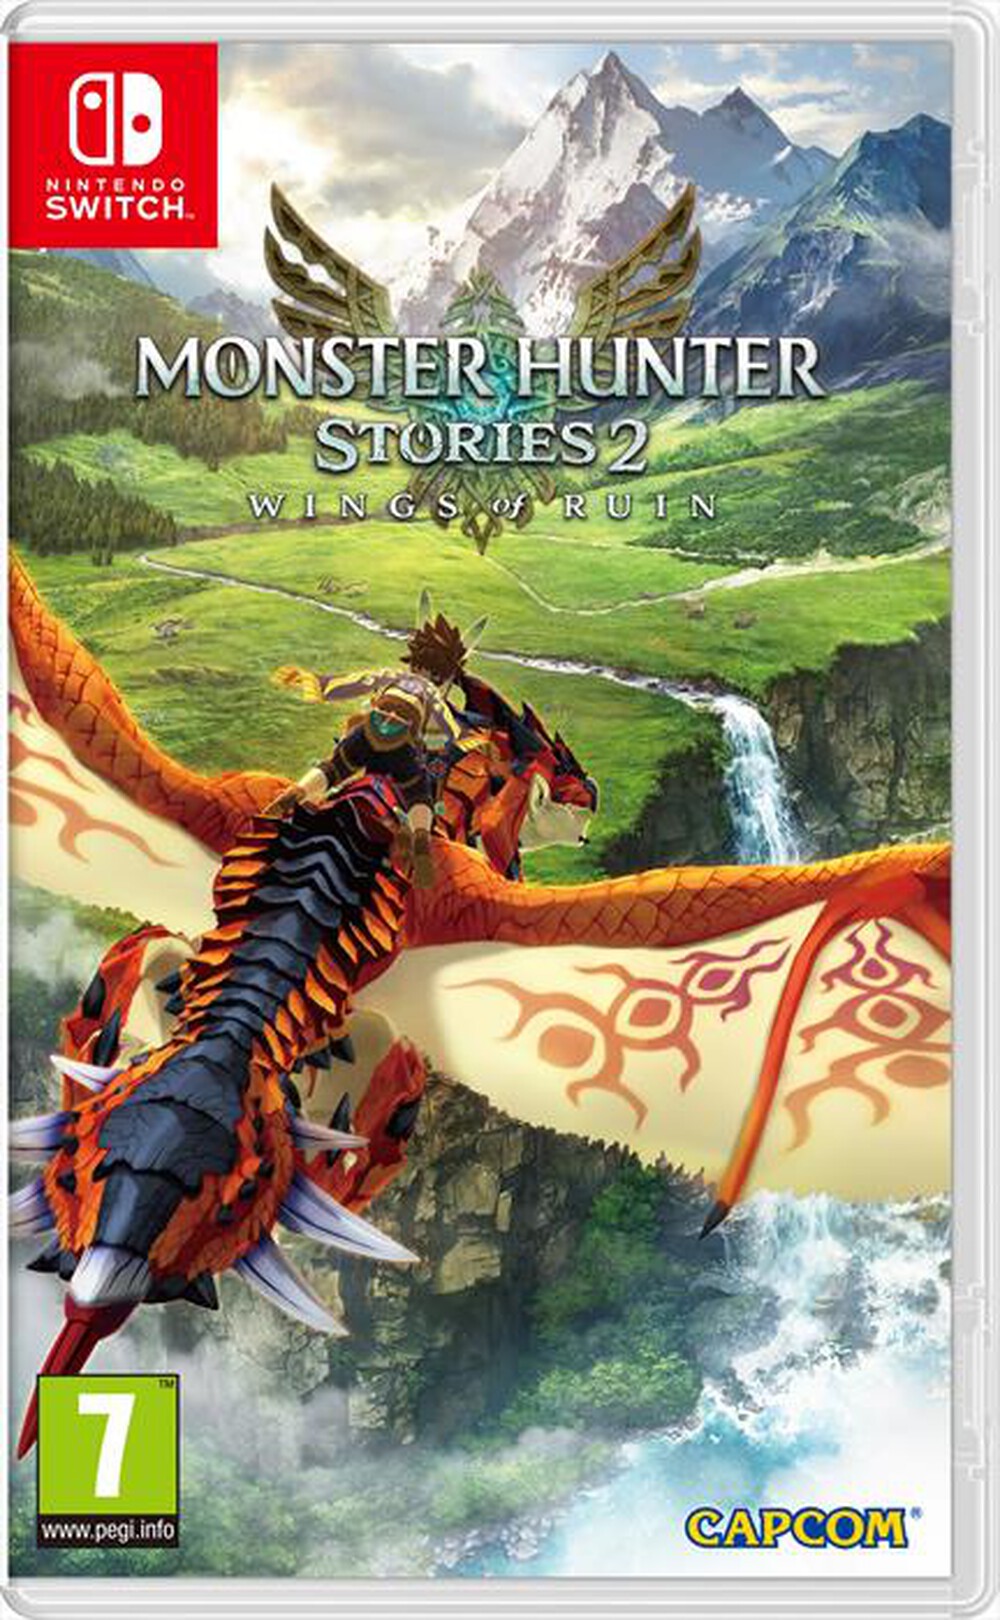 "NINTENDO - Monster Hunter Stories 2"